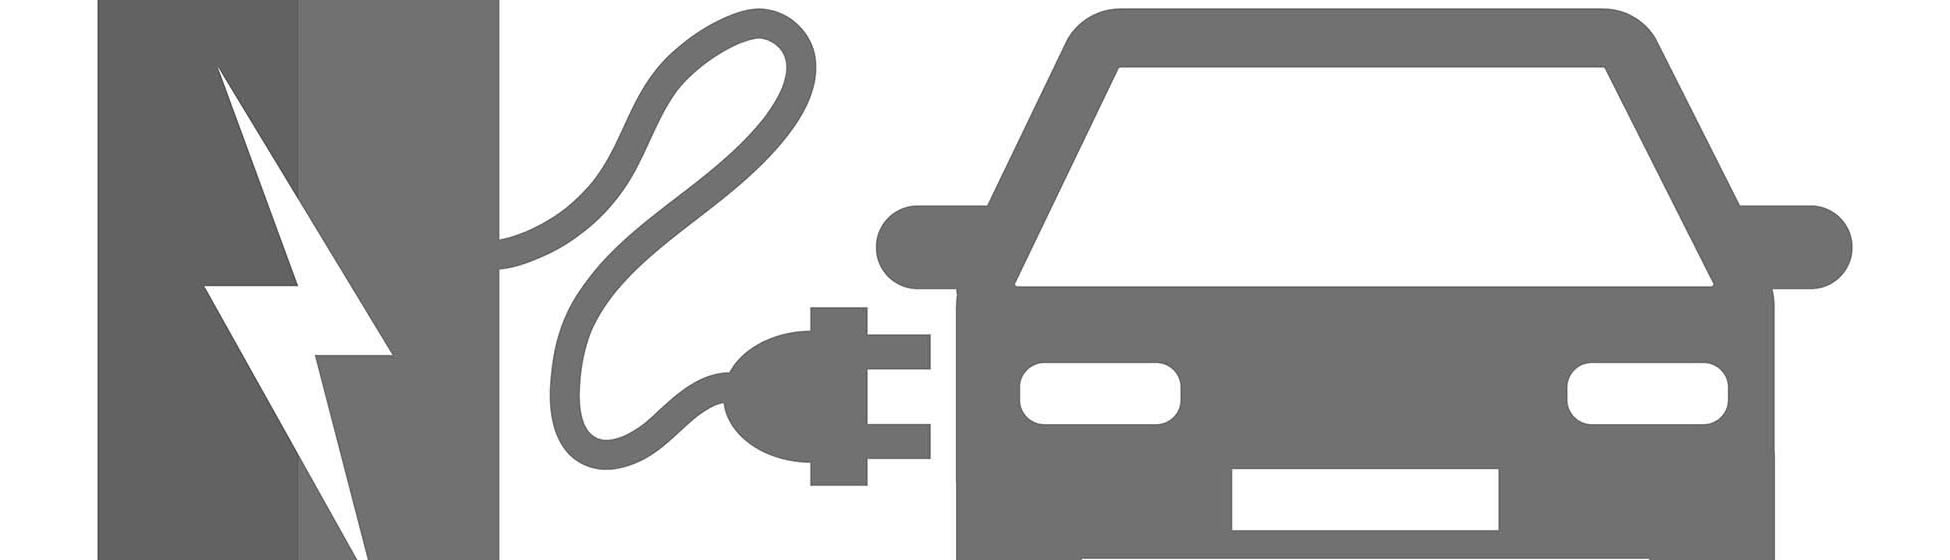 Puissance d une borne de recharge pour véhicule électrique